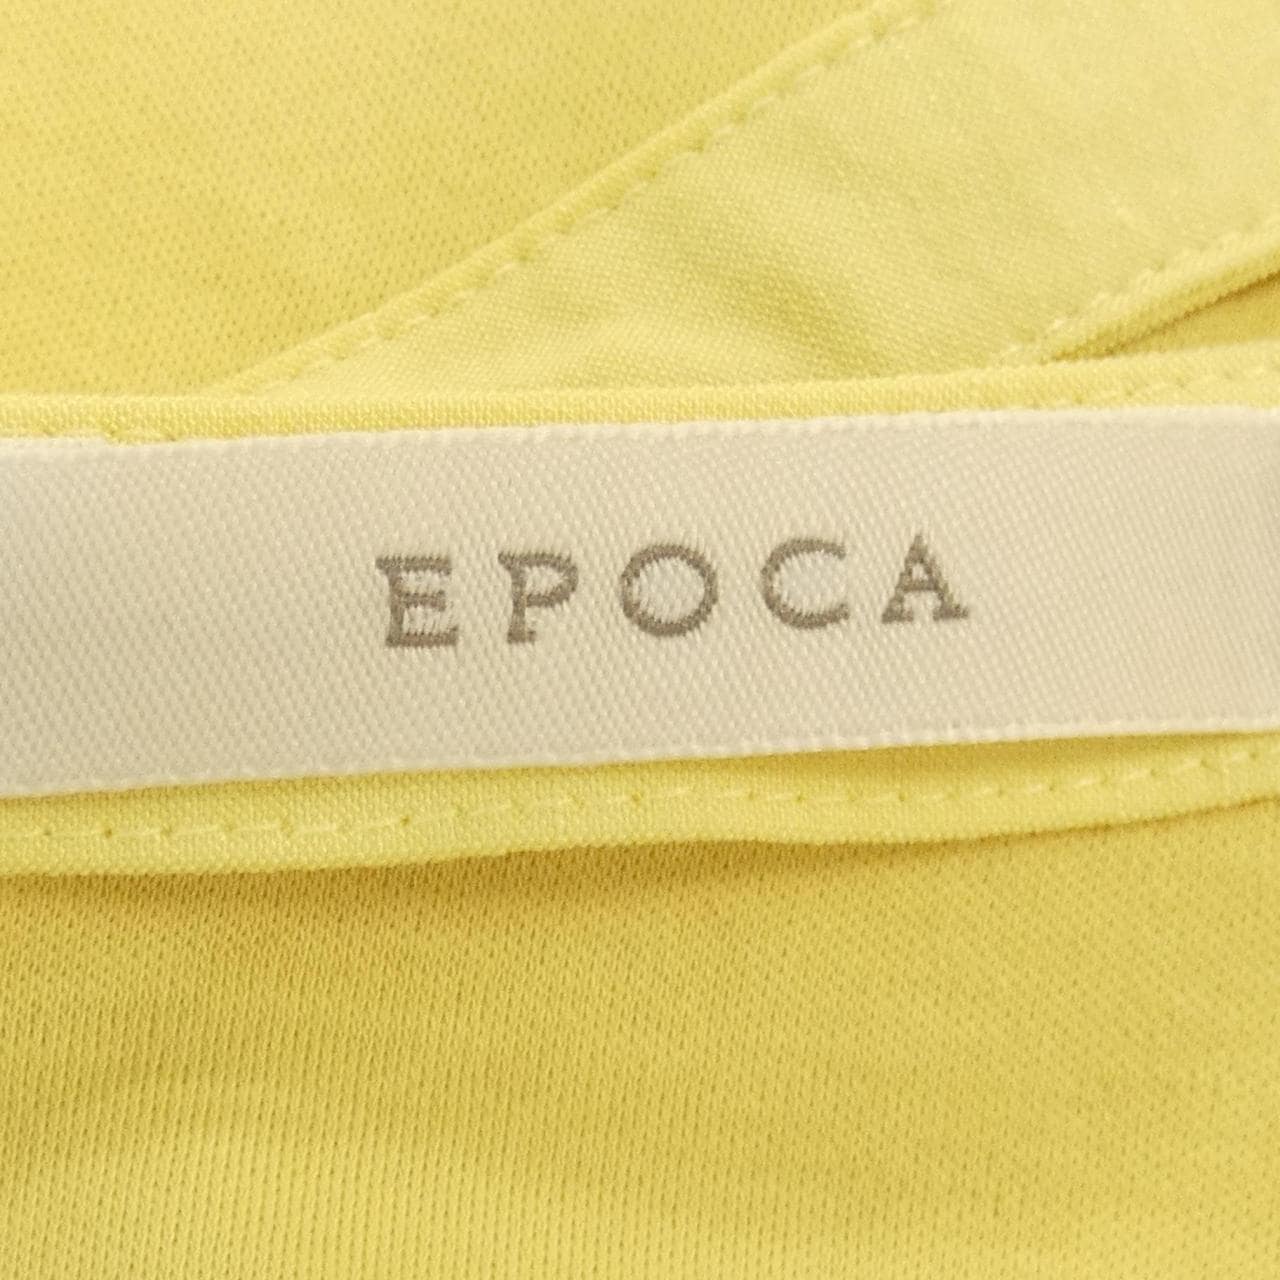 エポカ EPOCA トップス